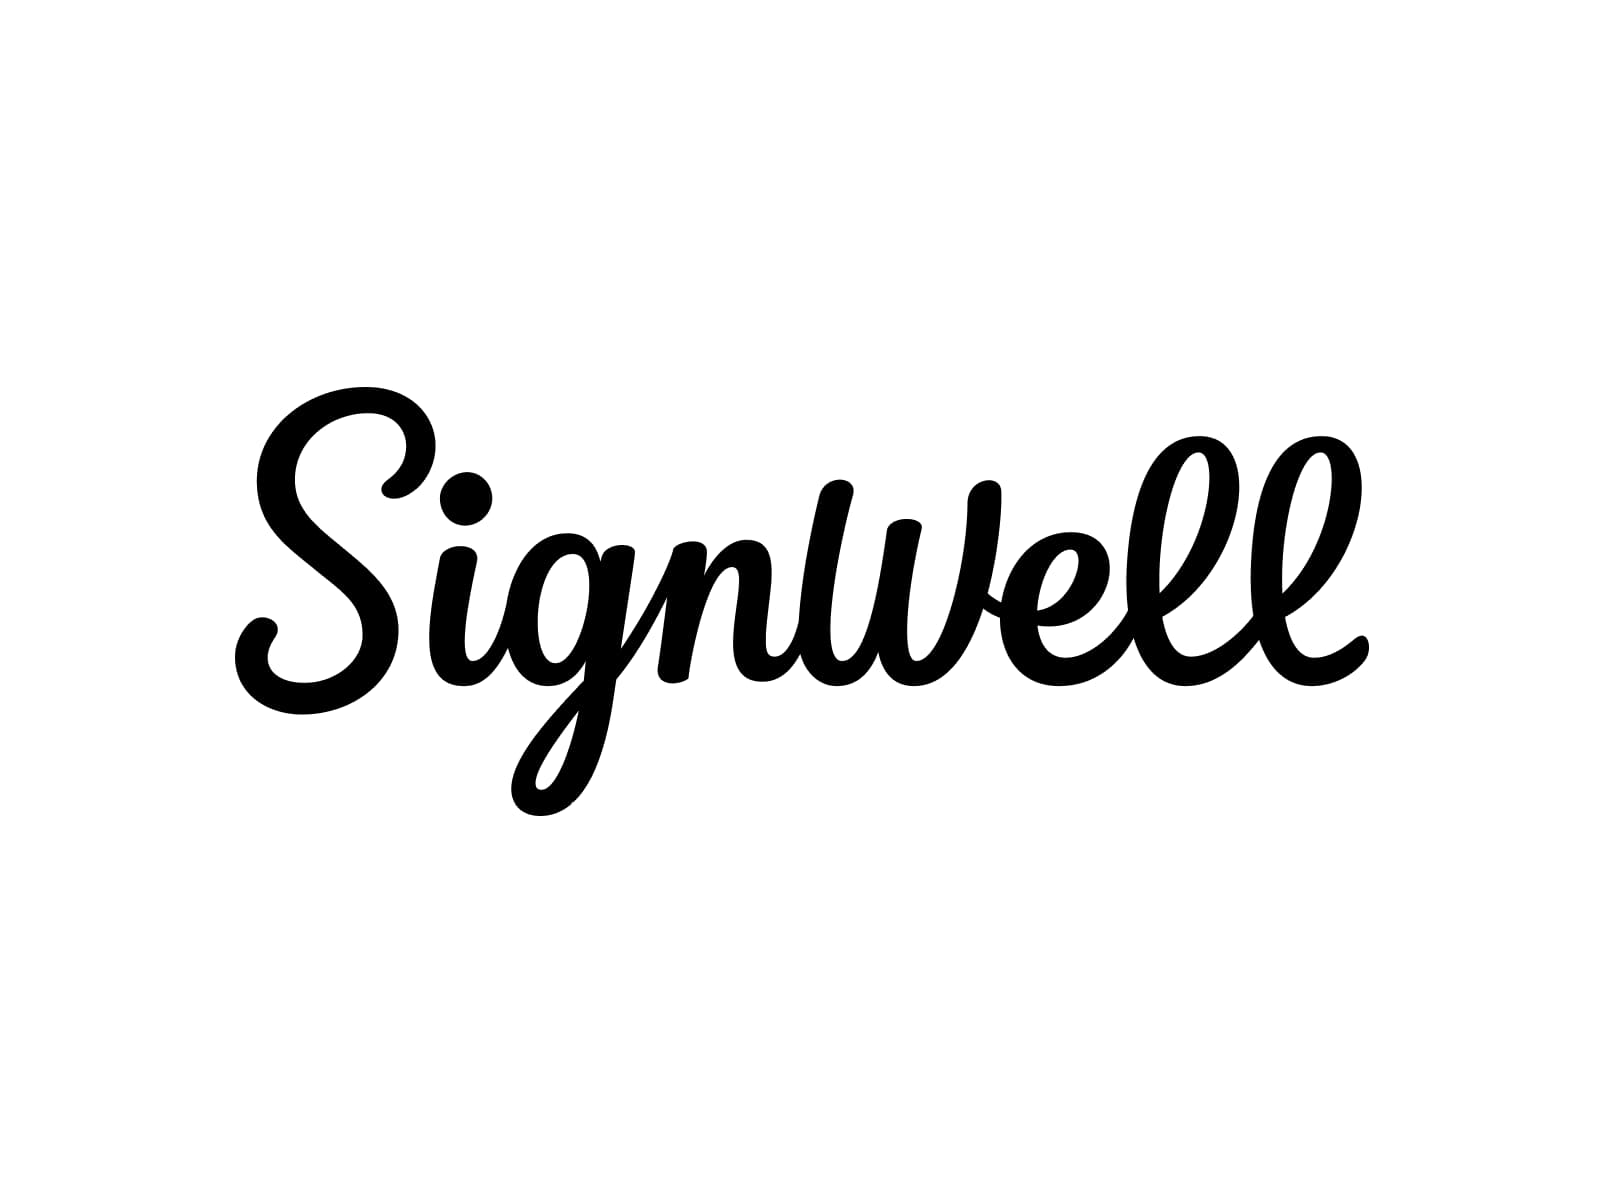 عمل اجمل توقيع باسمك PNG Sign well (1)